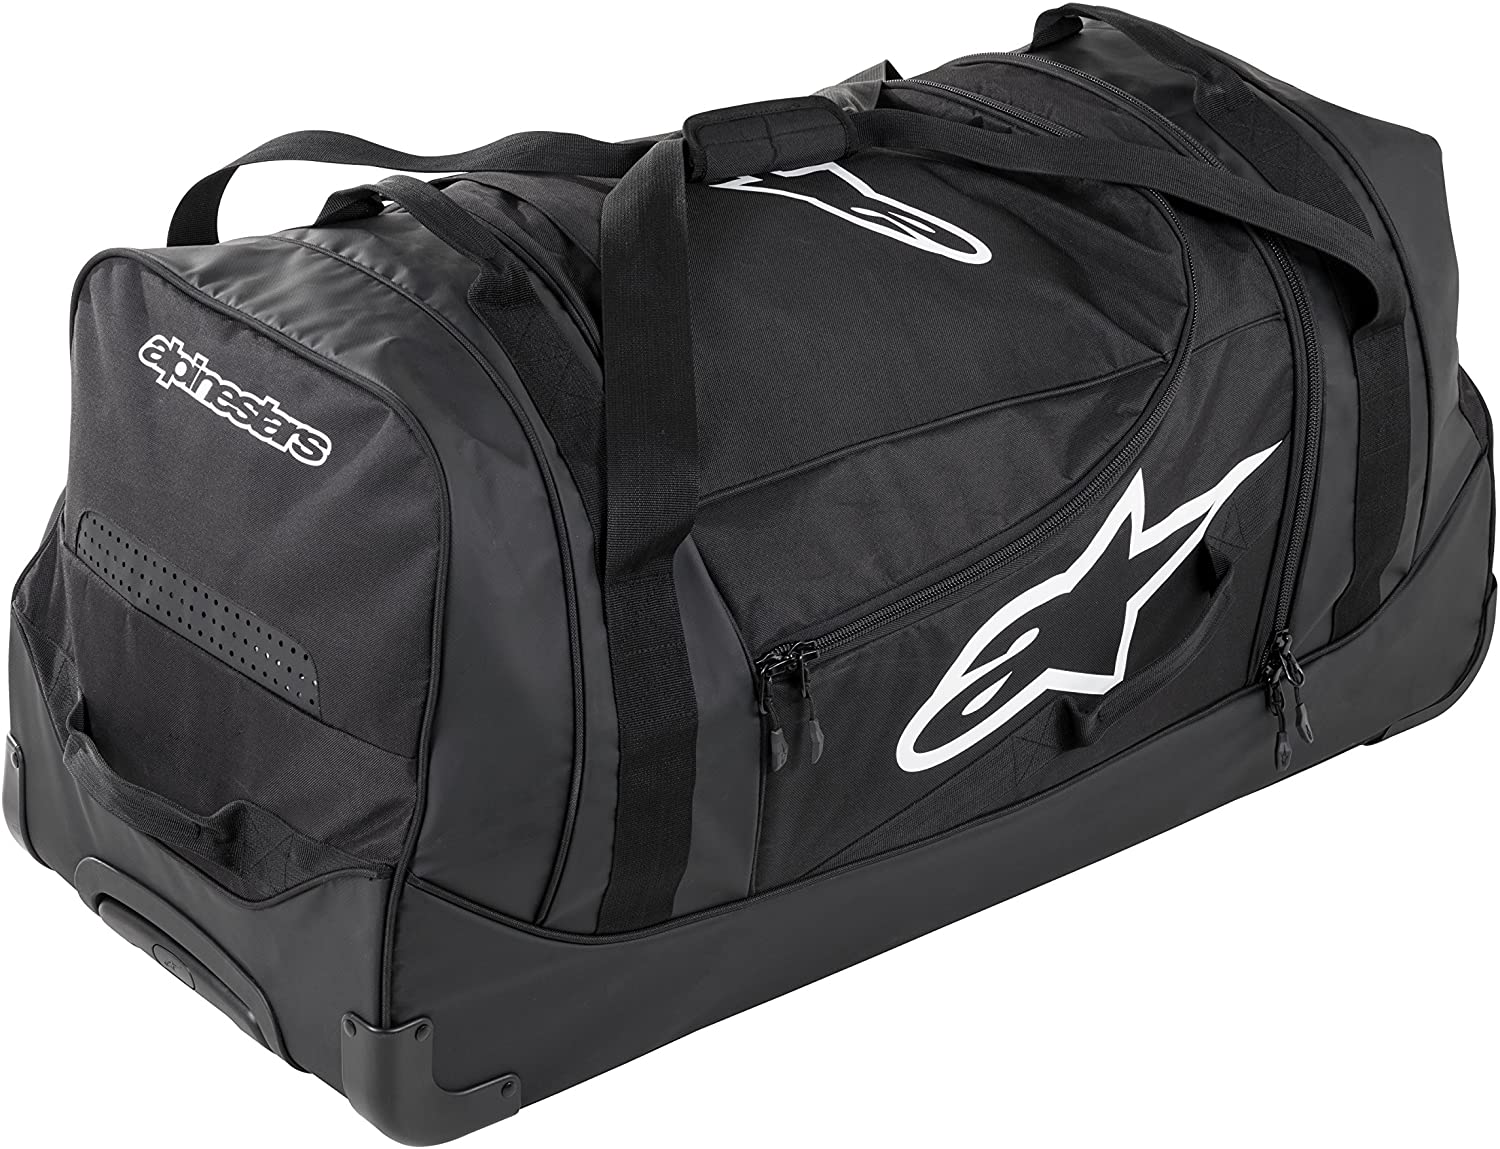 Komodo Travel Bag, Colors: 3 options